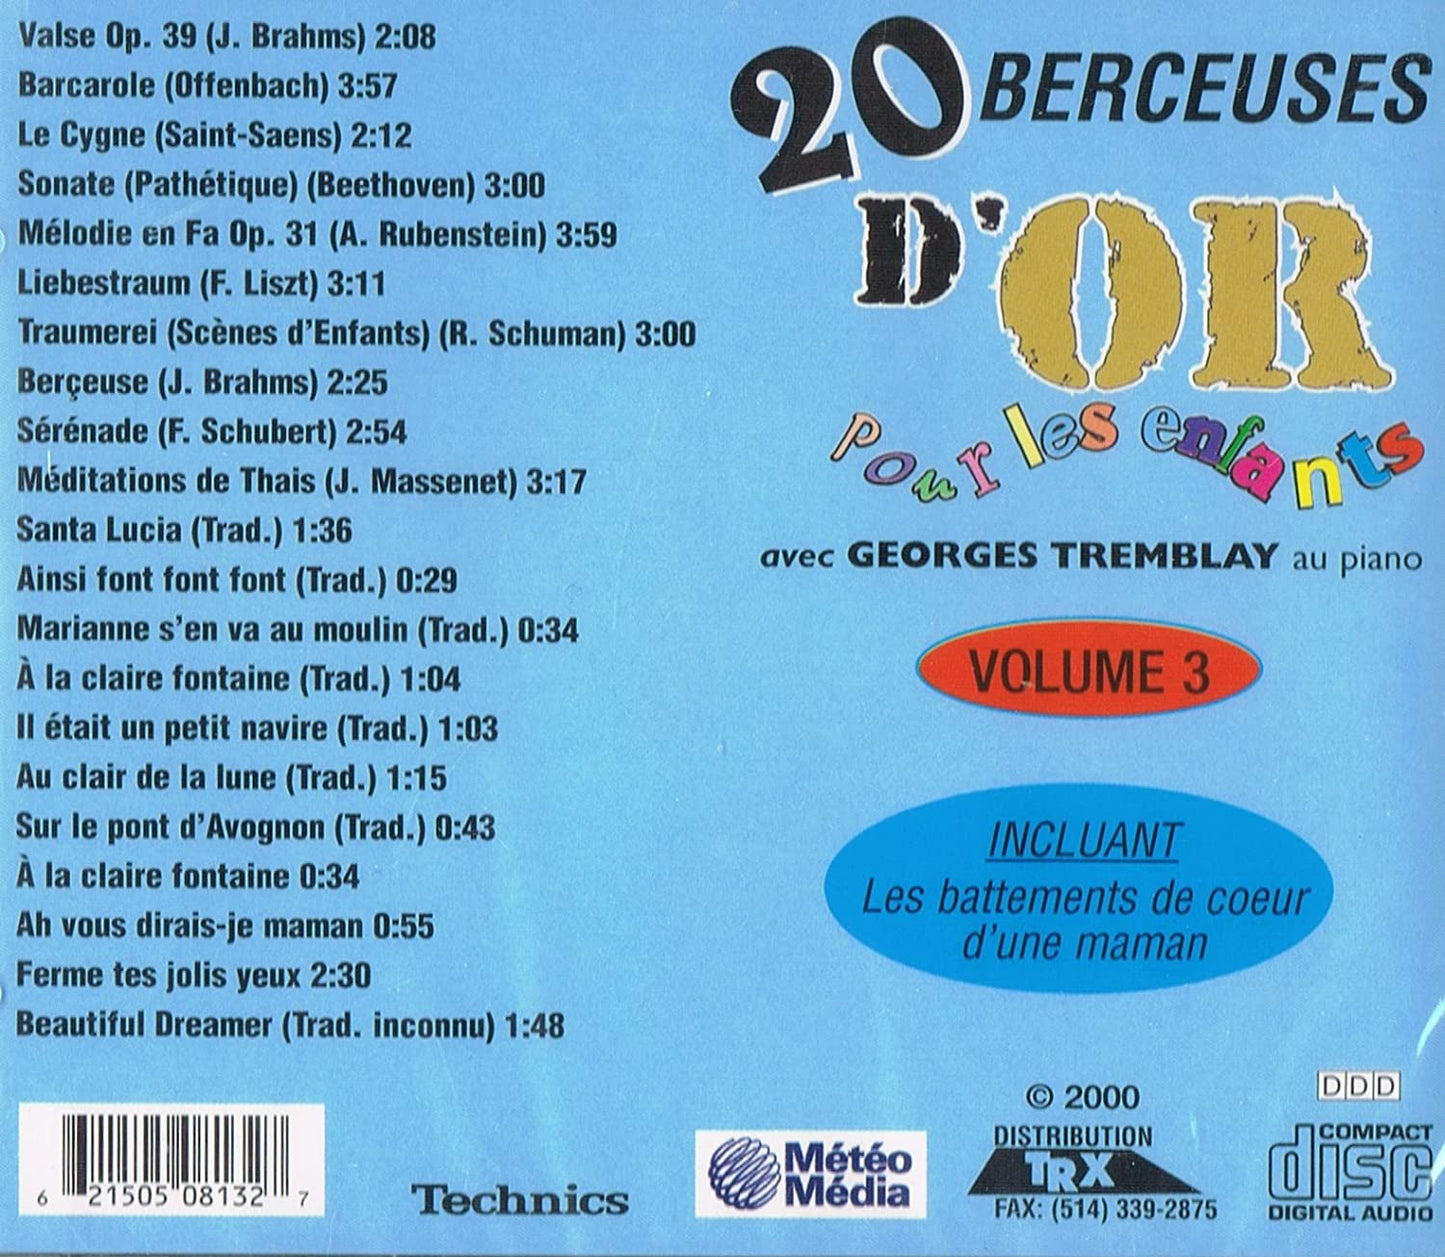 20 Berceuses D'or...3 [Audio CD] Varies Enfants